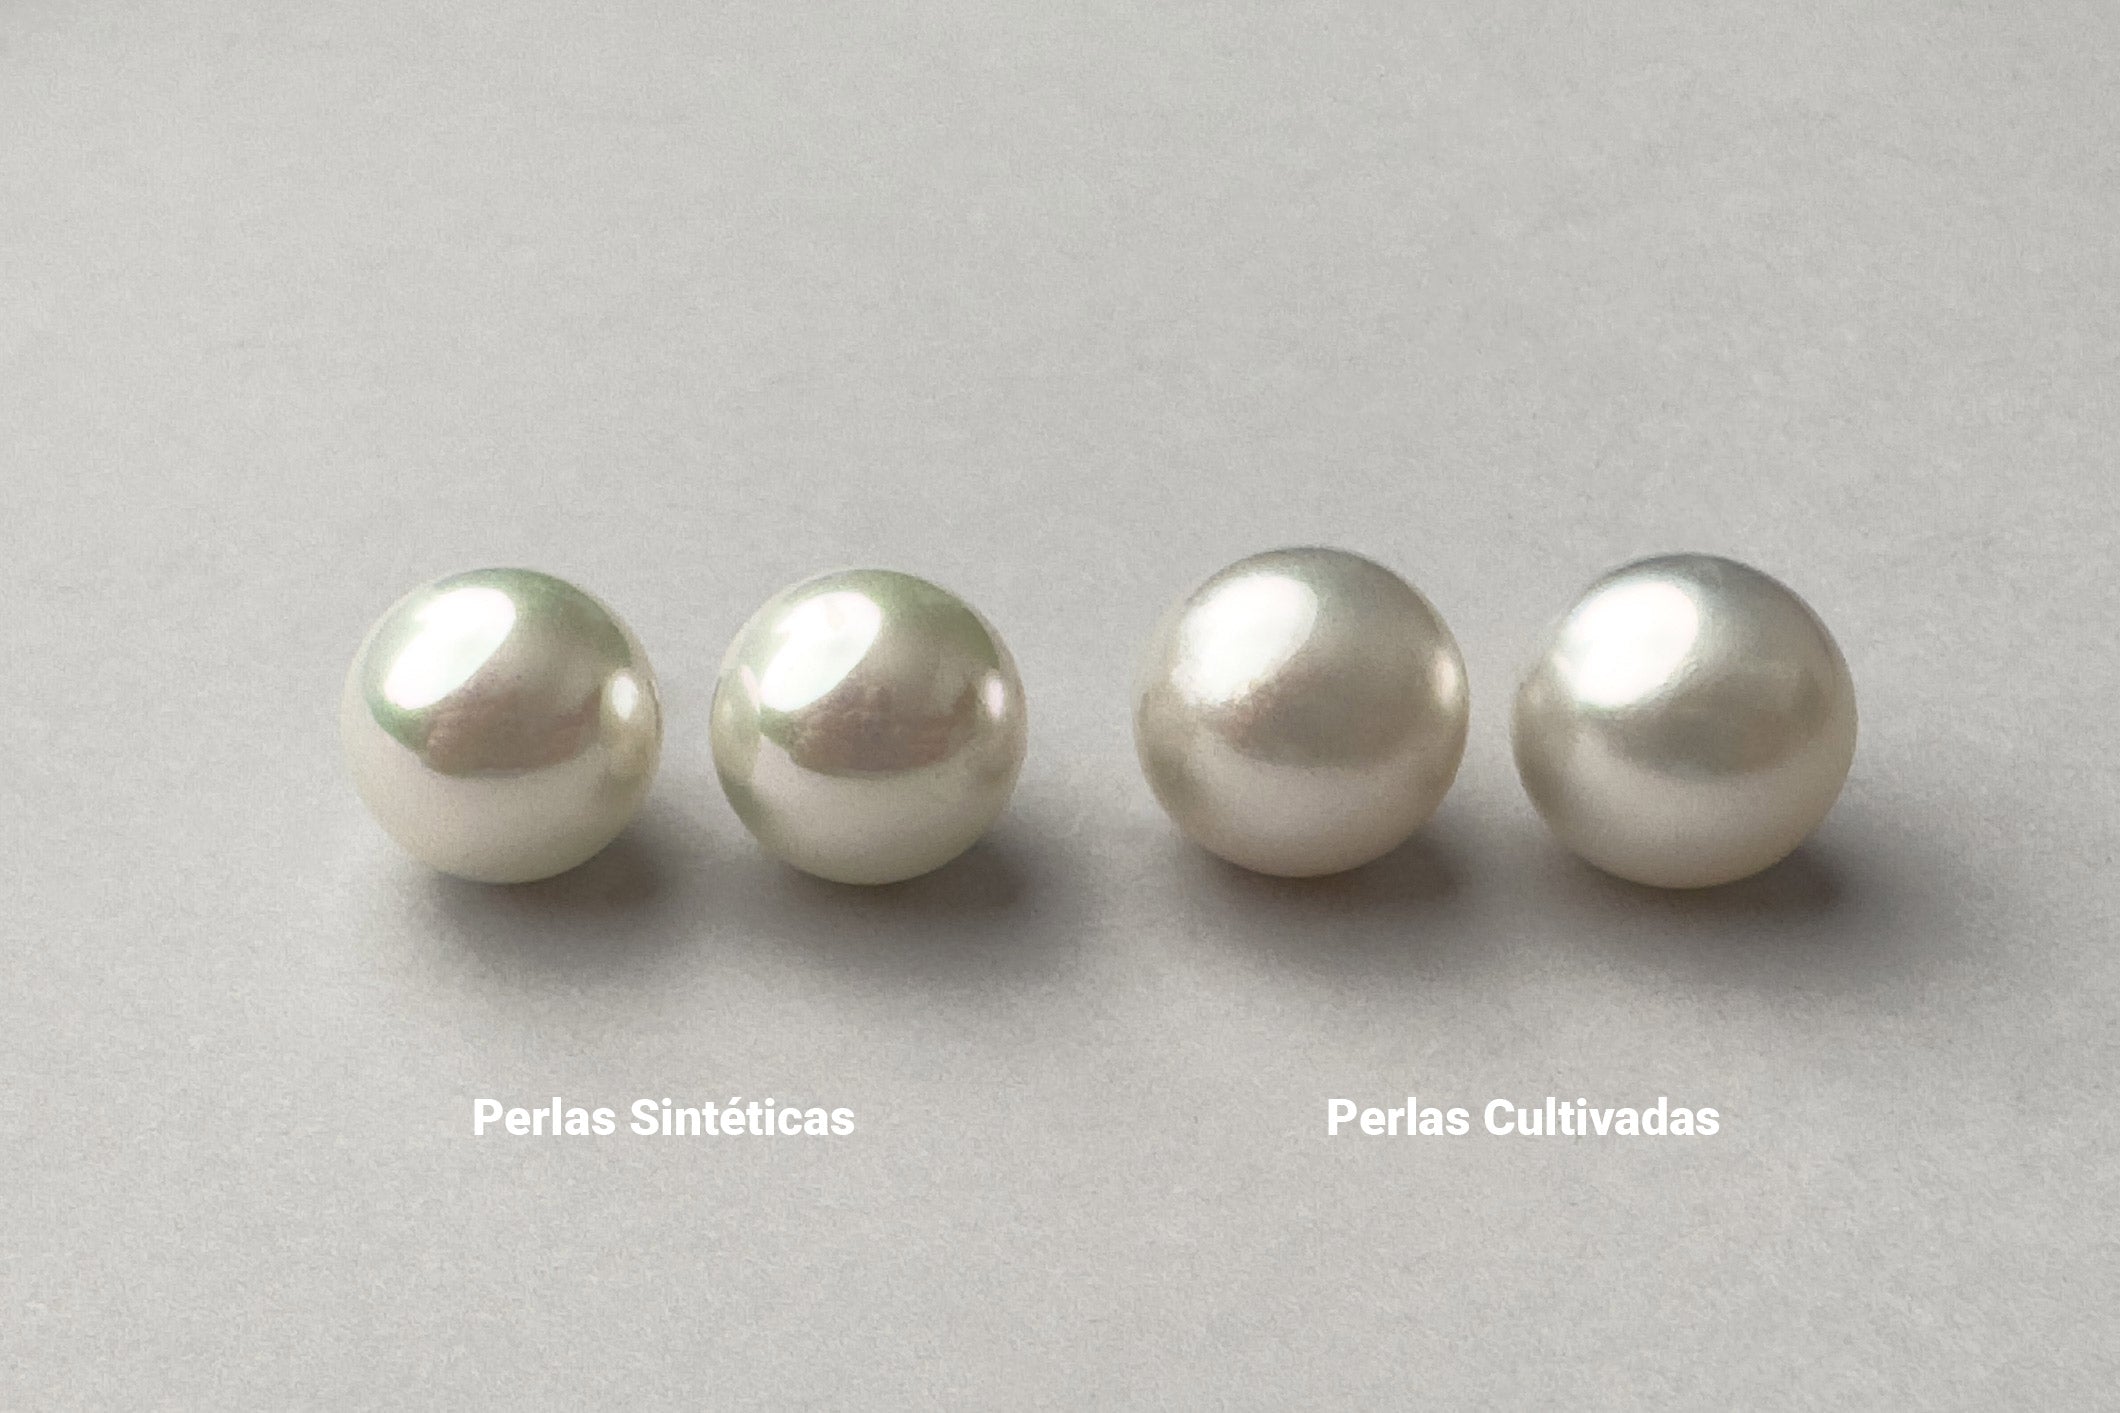 Vergleichsbild zwischen synthetischen und kultivierten Perlen